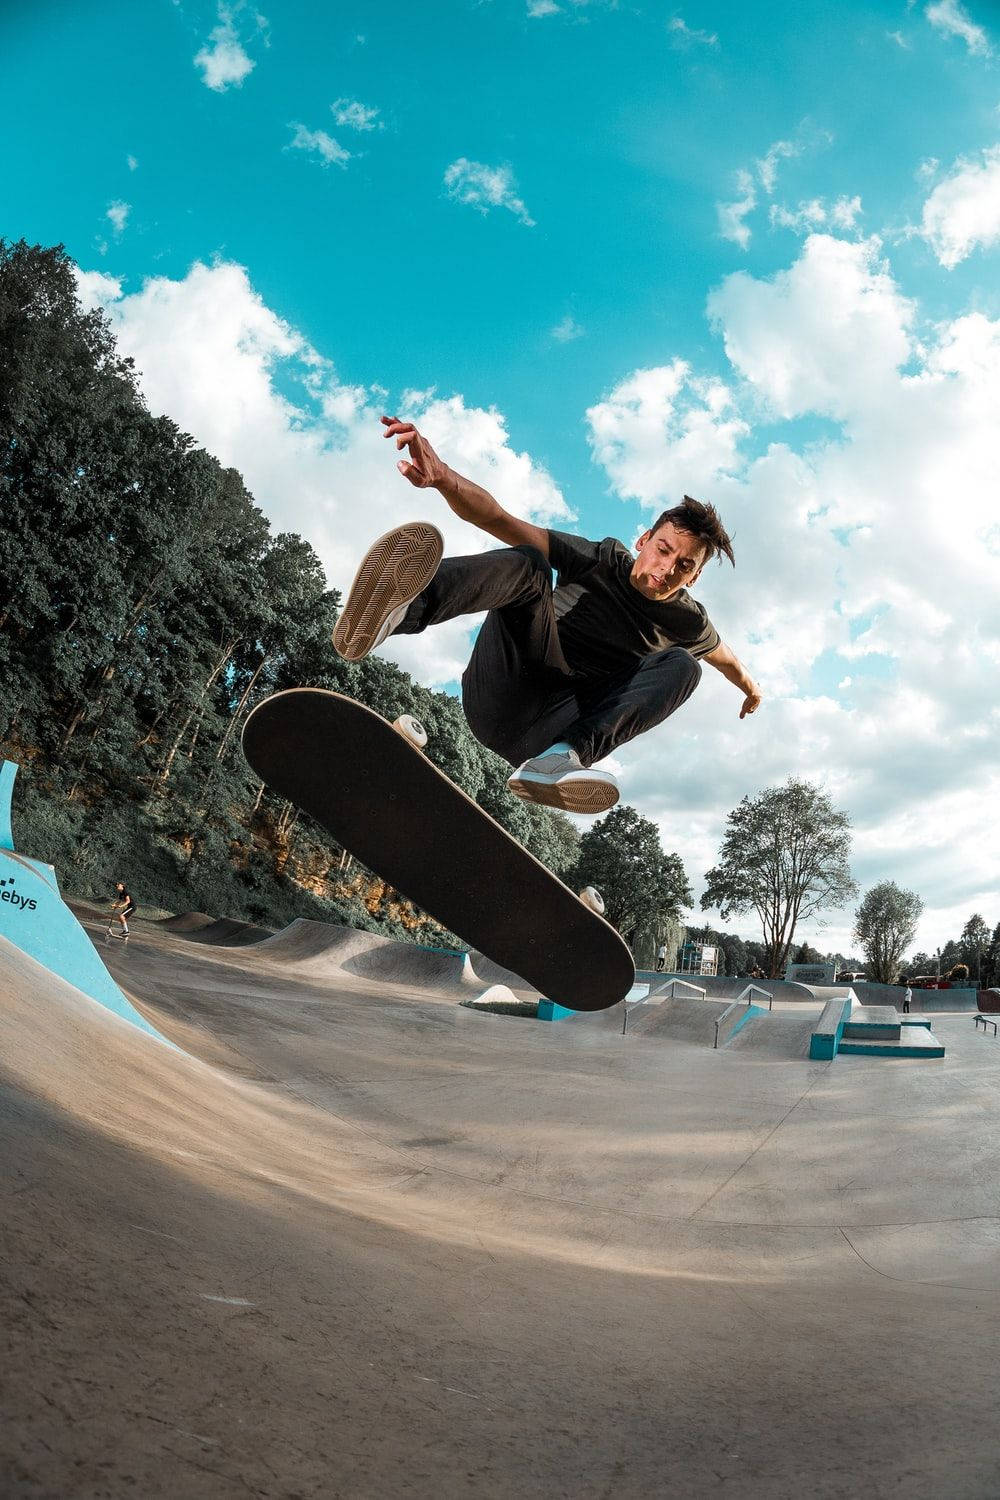 Aesthetic Skateboard Blue Sky Background